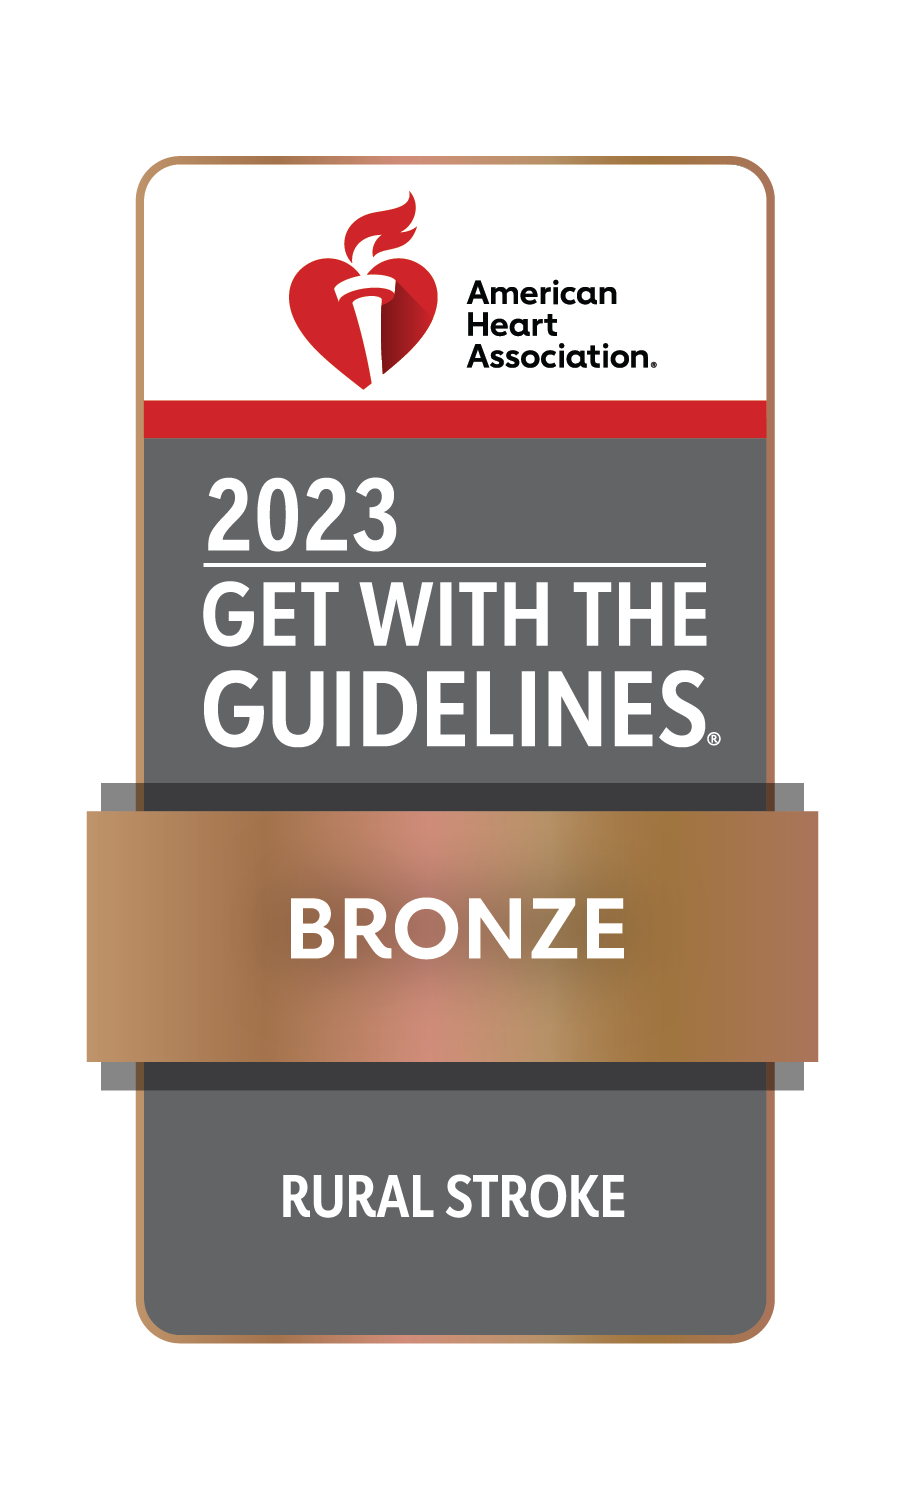 St, Luke Follows 2023 American Heart Association Guidelines